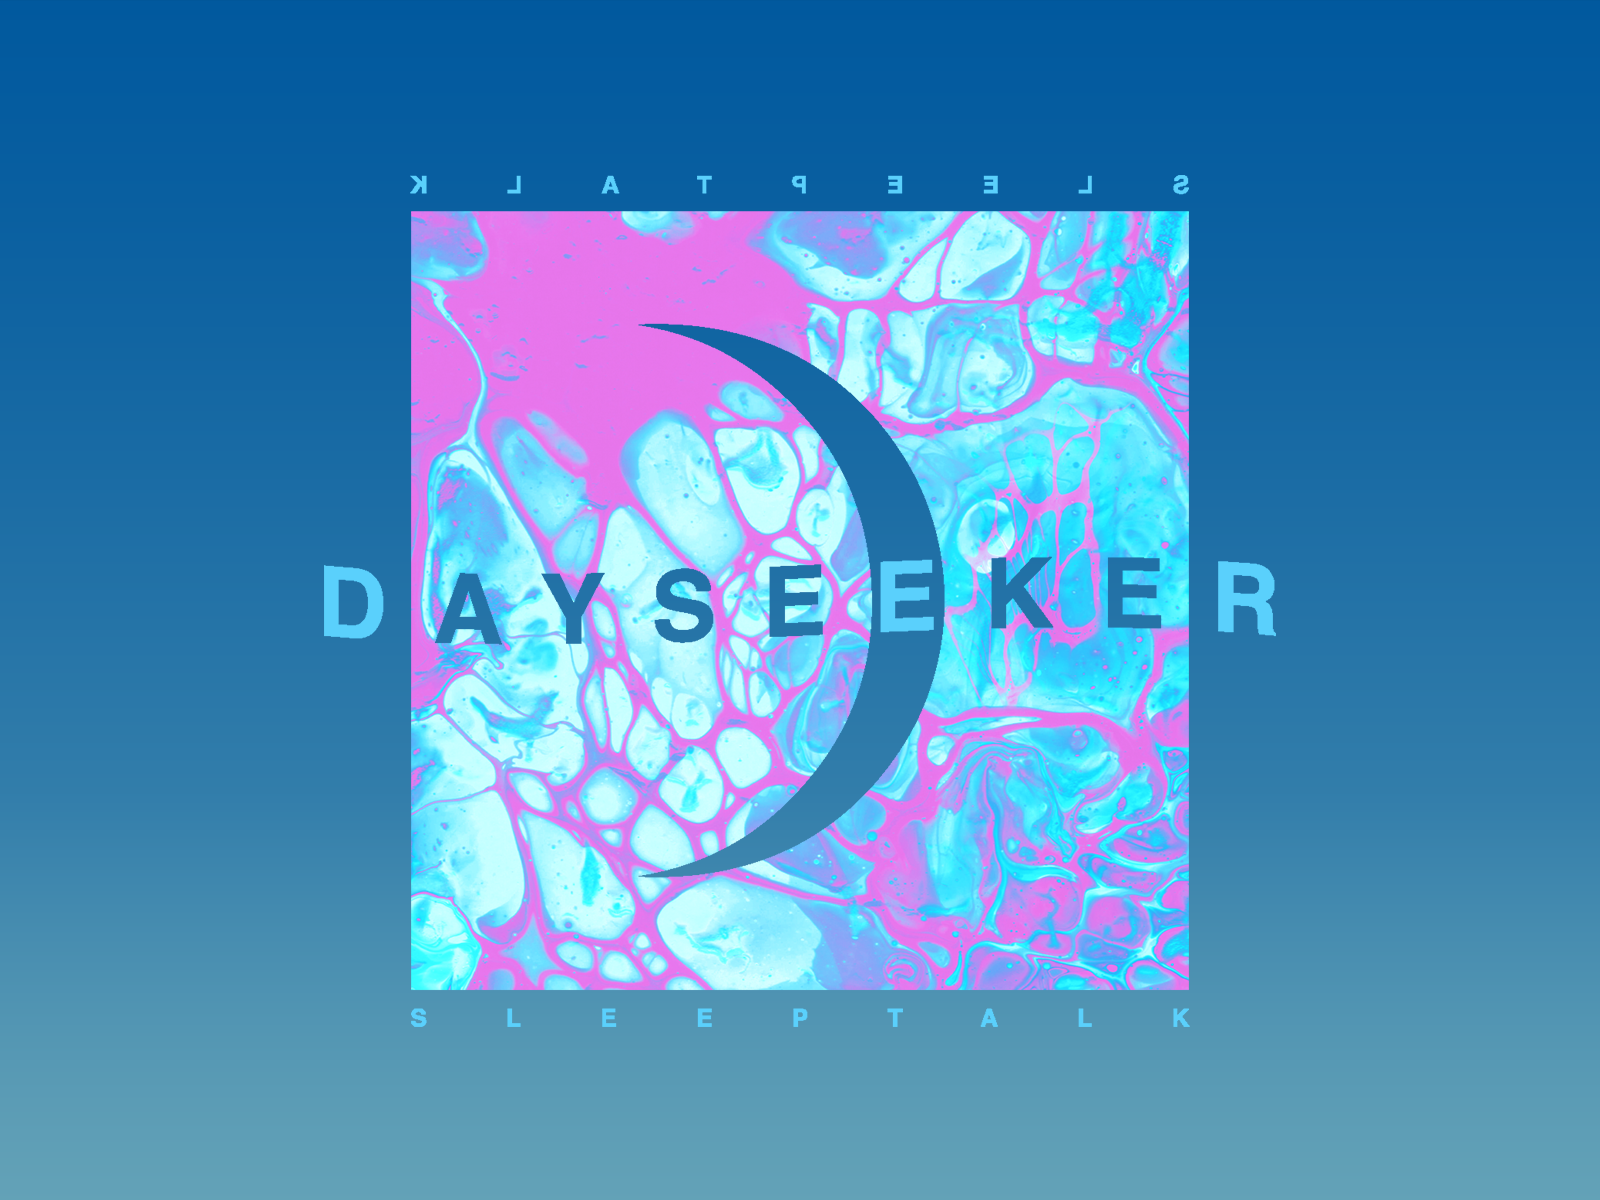 Dayseeker By Deanna Strait On Dribbble